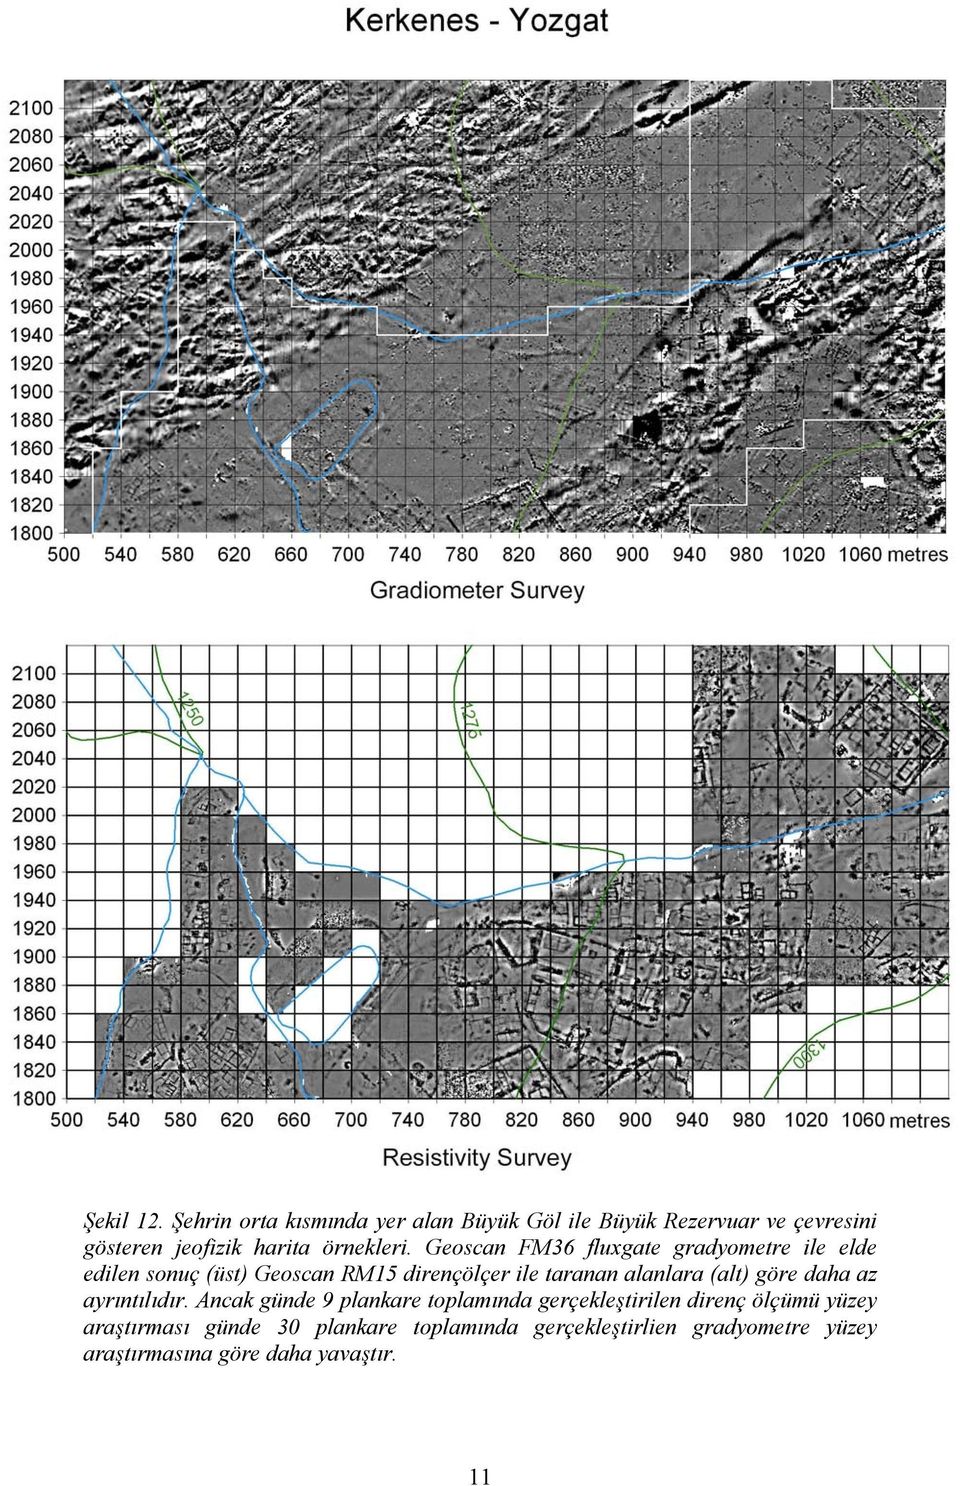 Geoscan FM36 fluxgate gradyometre ile elde edilen sonuç (üst) Geoscan RM15 dirençölçer ile taranan alanlara